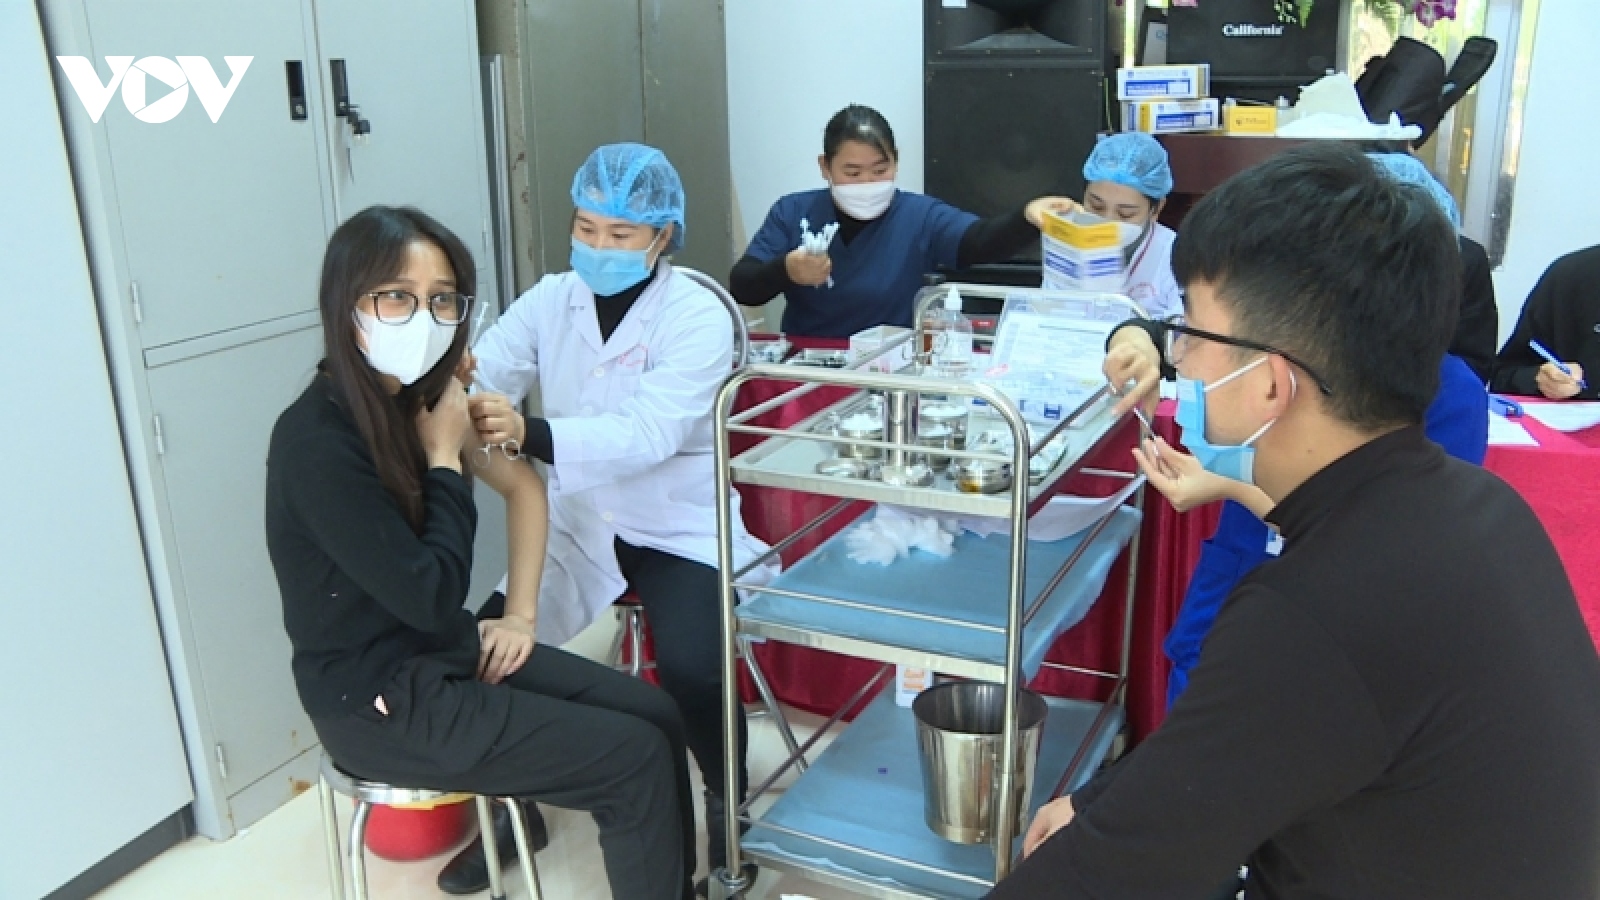 Một học sinh lớp 10 ở Sơn La tử vong sau 3 ngày tiêm vaccine ngừa Covid-19